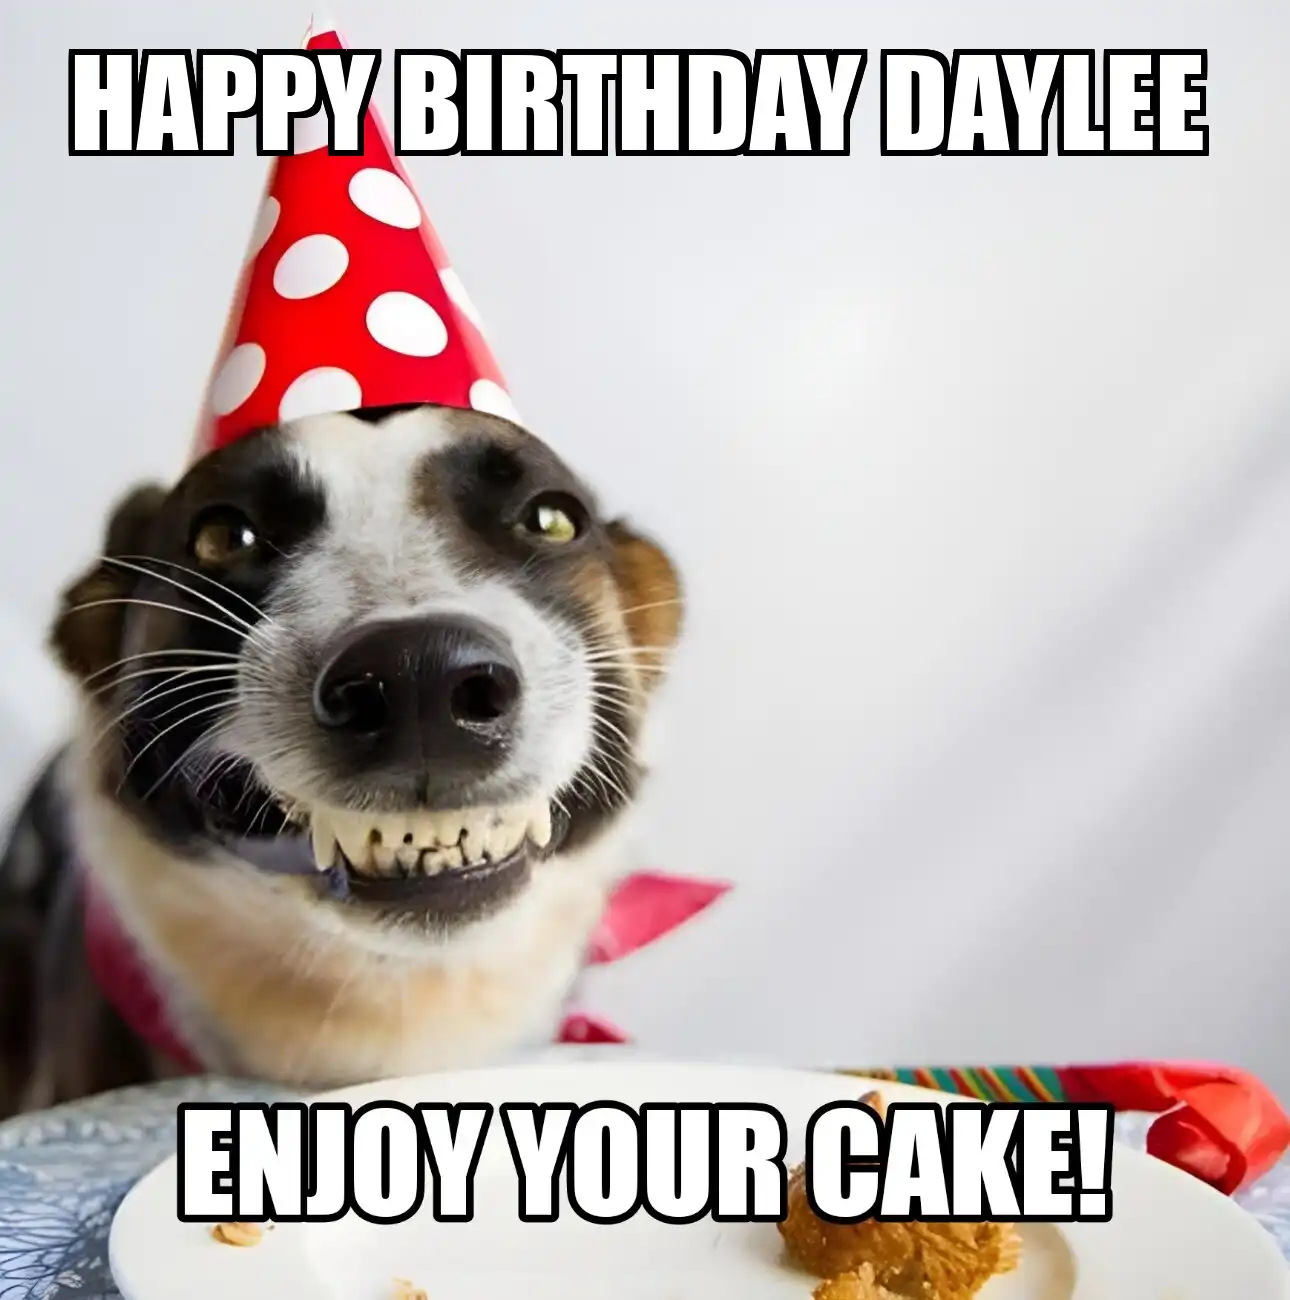 Happy Birthday Daylee Enjoy Your Cake Dog Meme